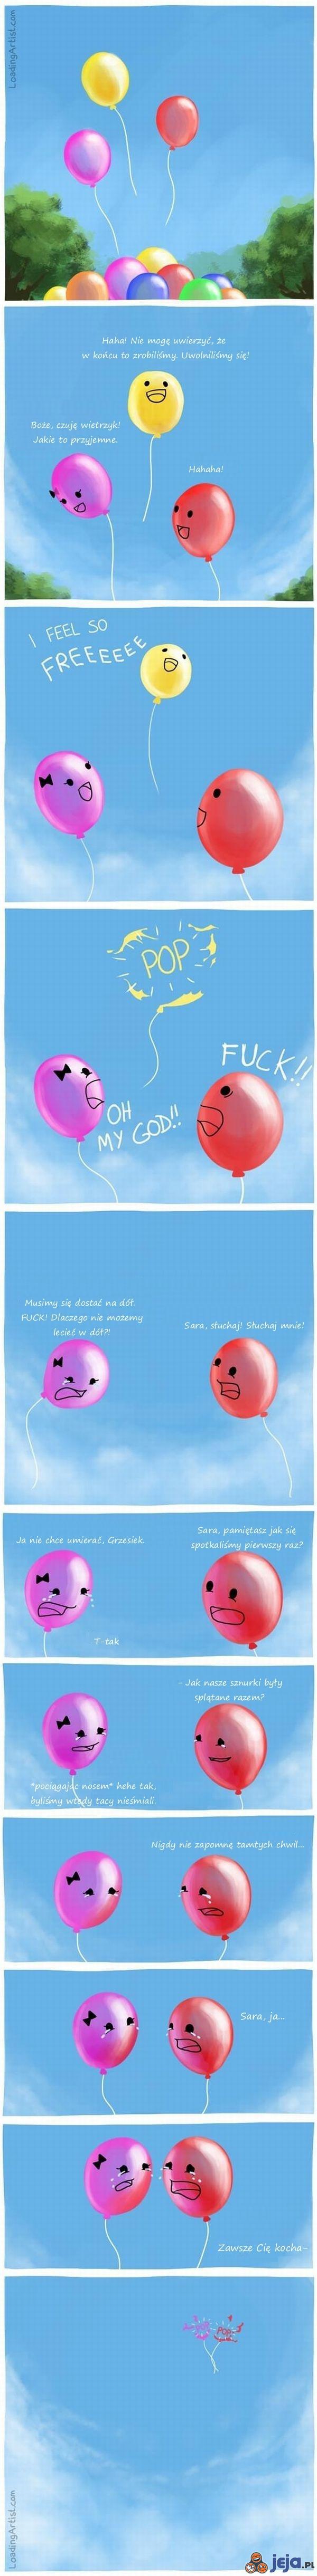 Uwolnione balony